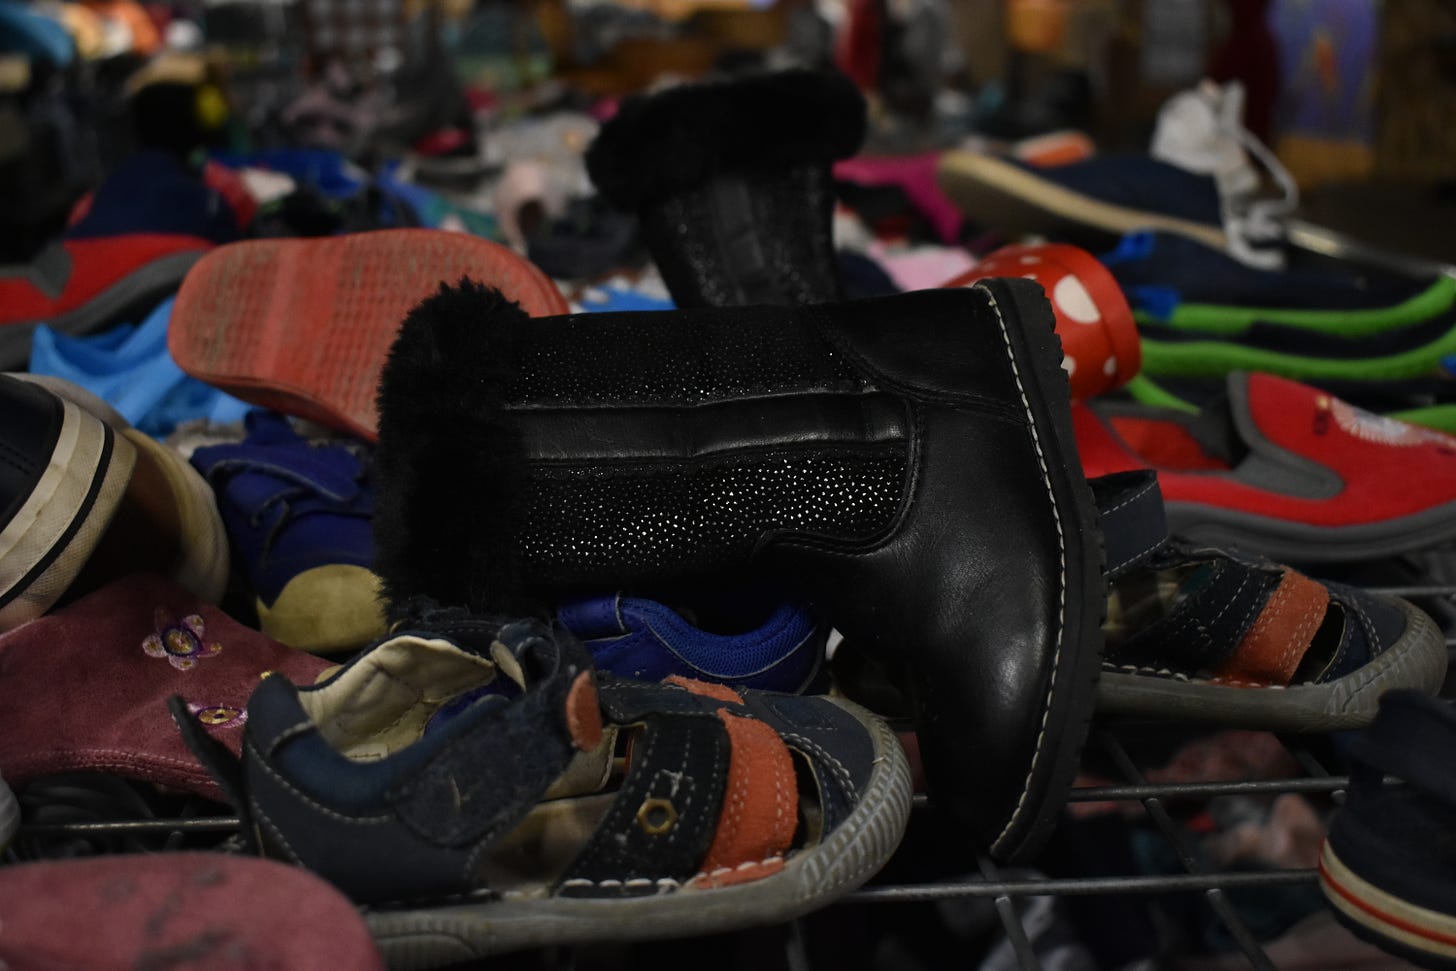 Foto de un mostrador en una tienda de artículos reciclados  y de segunda mano, que muestra un apilonamiento de zapatos de niños. En primera plana hay unas boticas negras y unas sandalias.